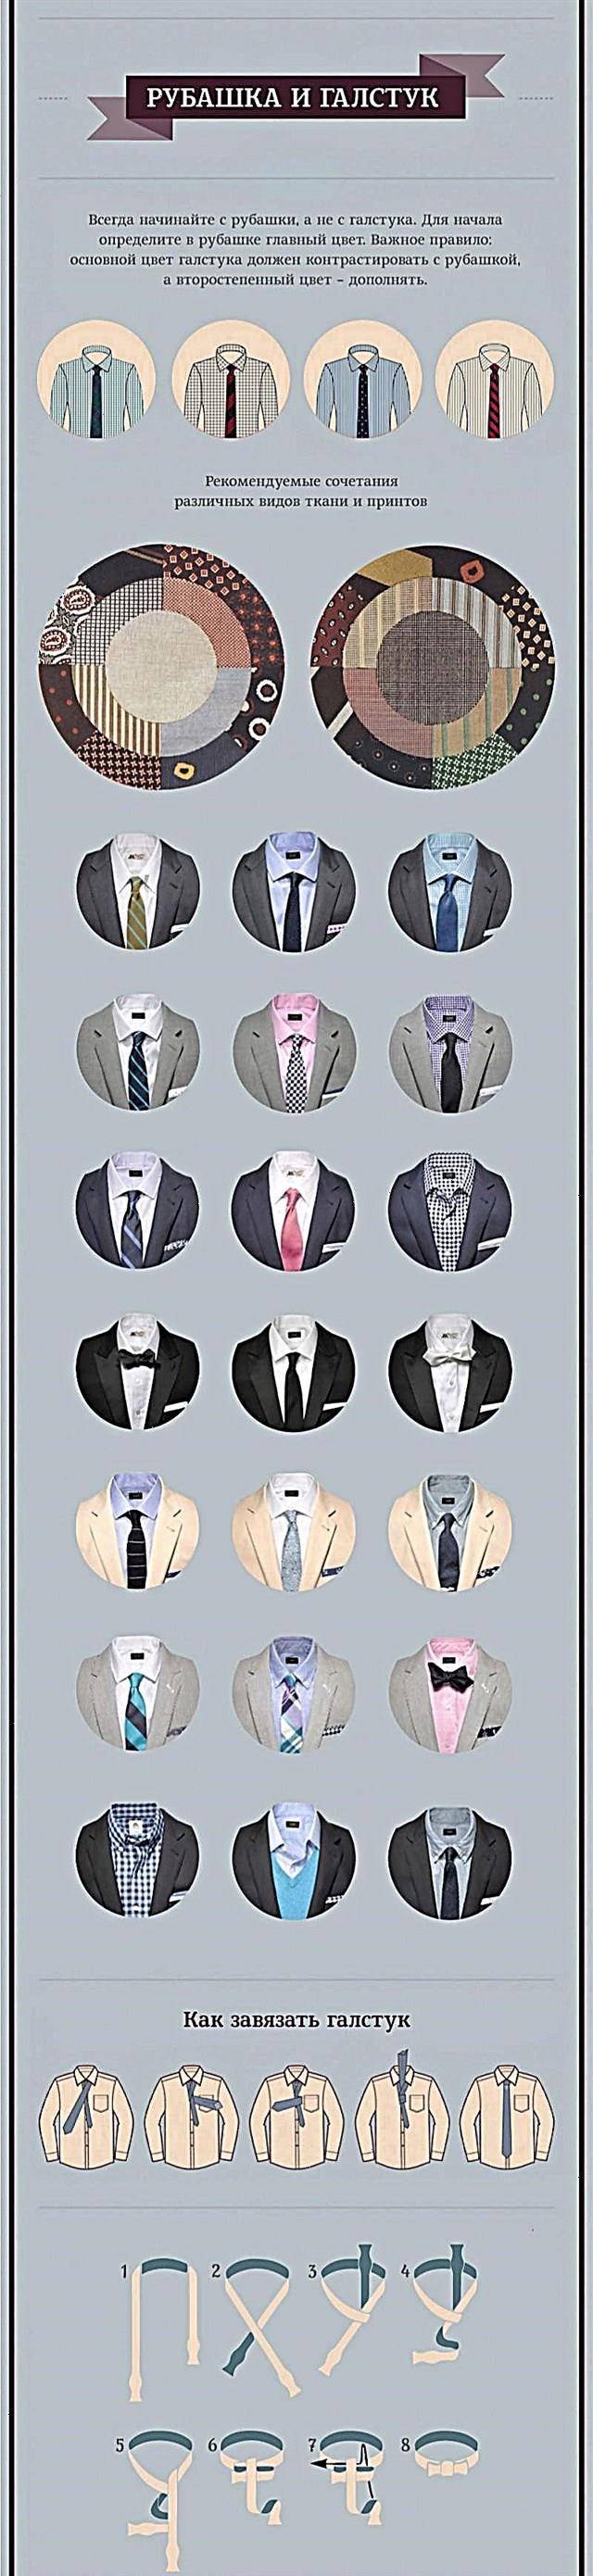 Как правильно выбрать галстук к костюму и рубашке